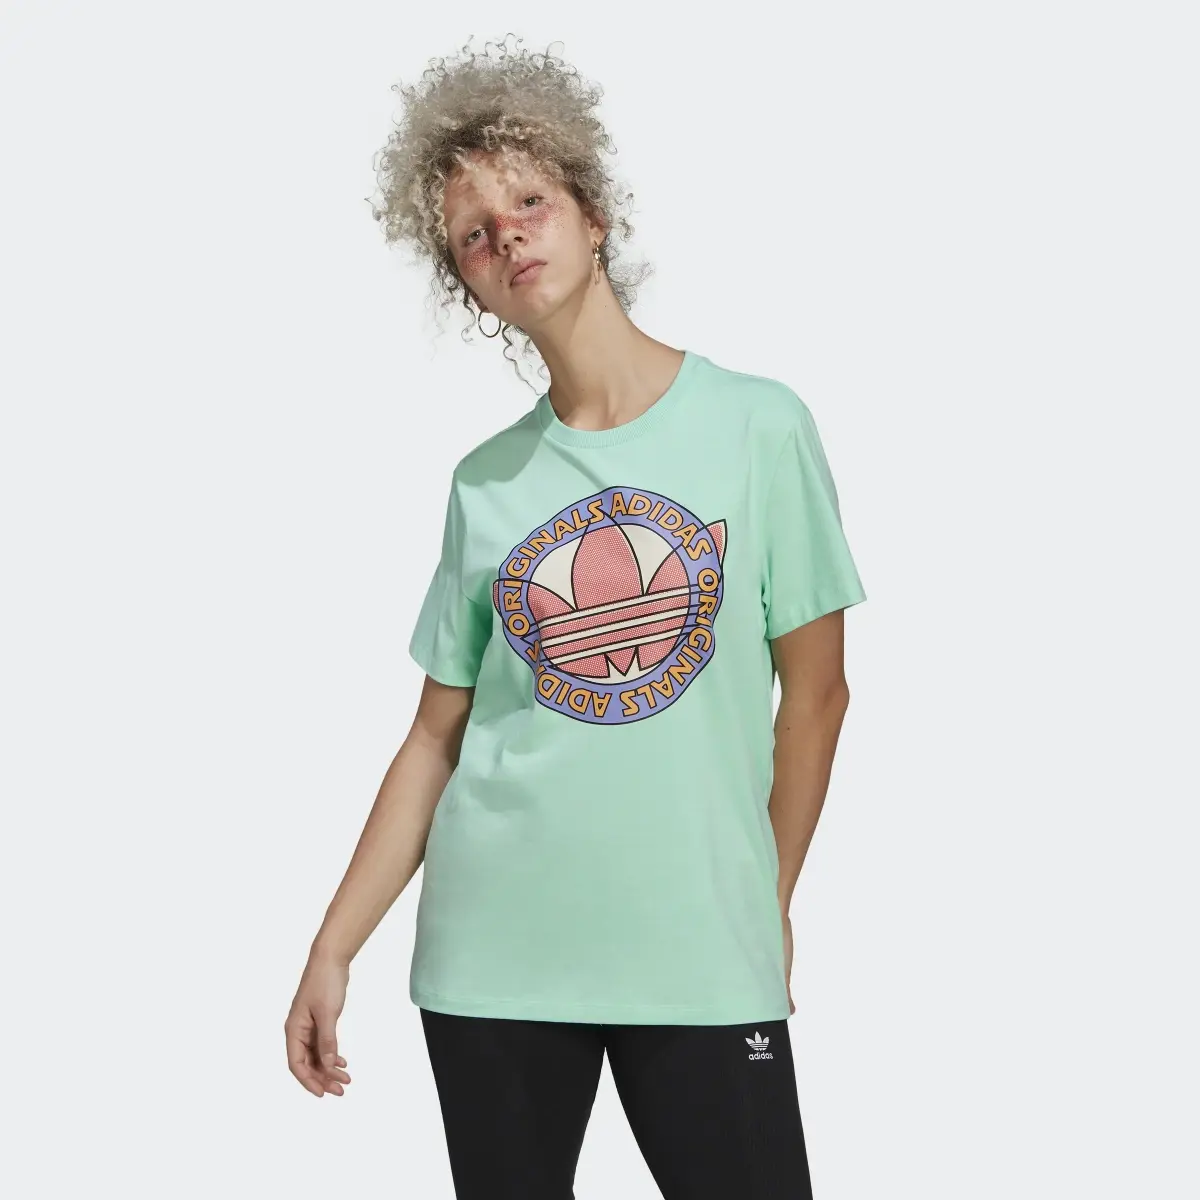 Adidas T-shirt Summer Surf. 2